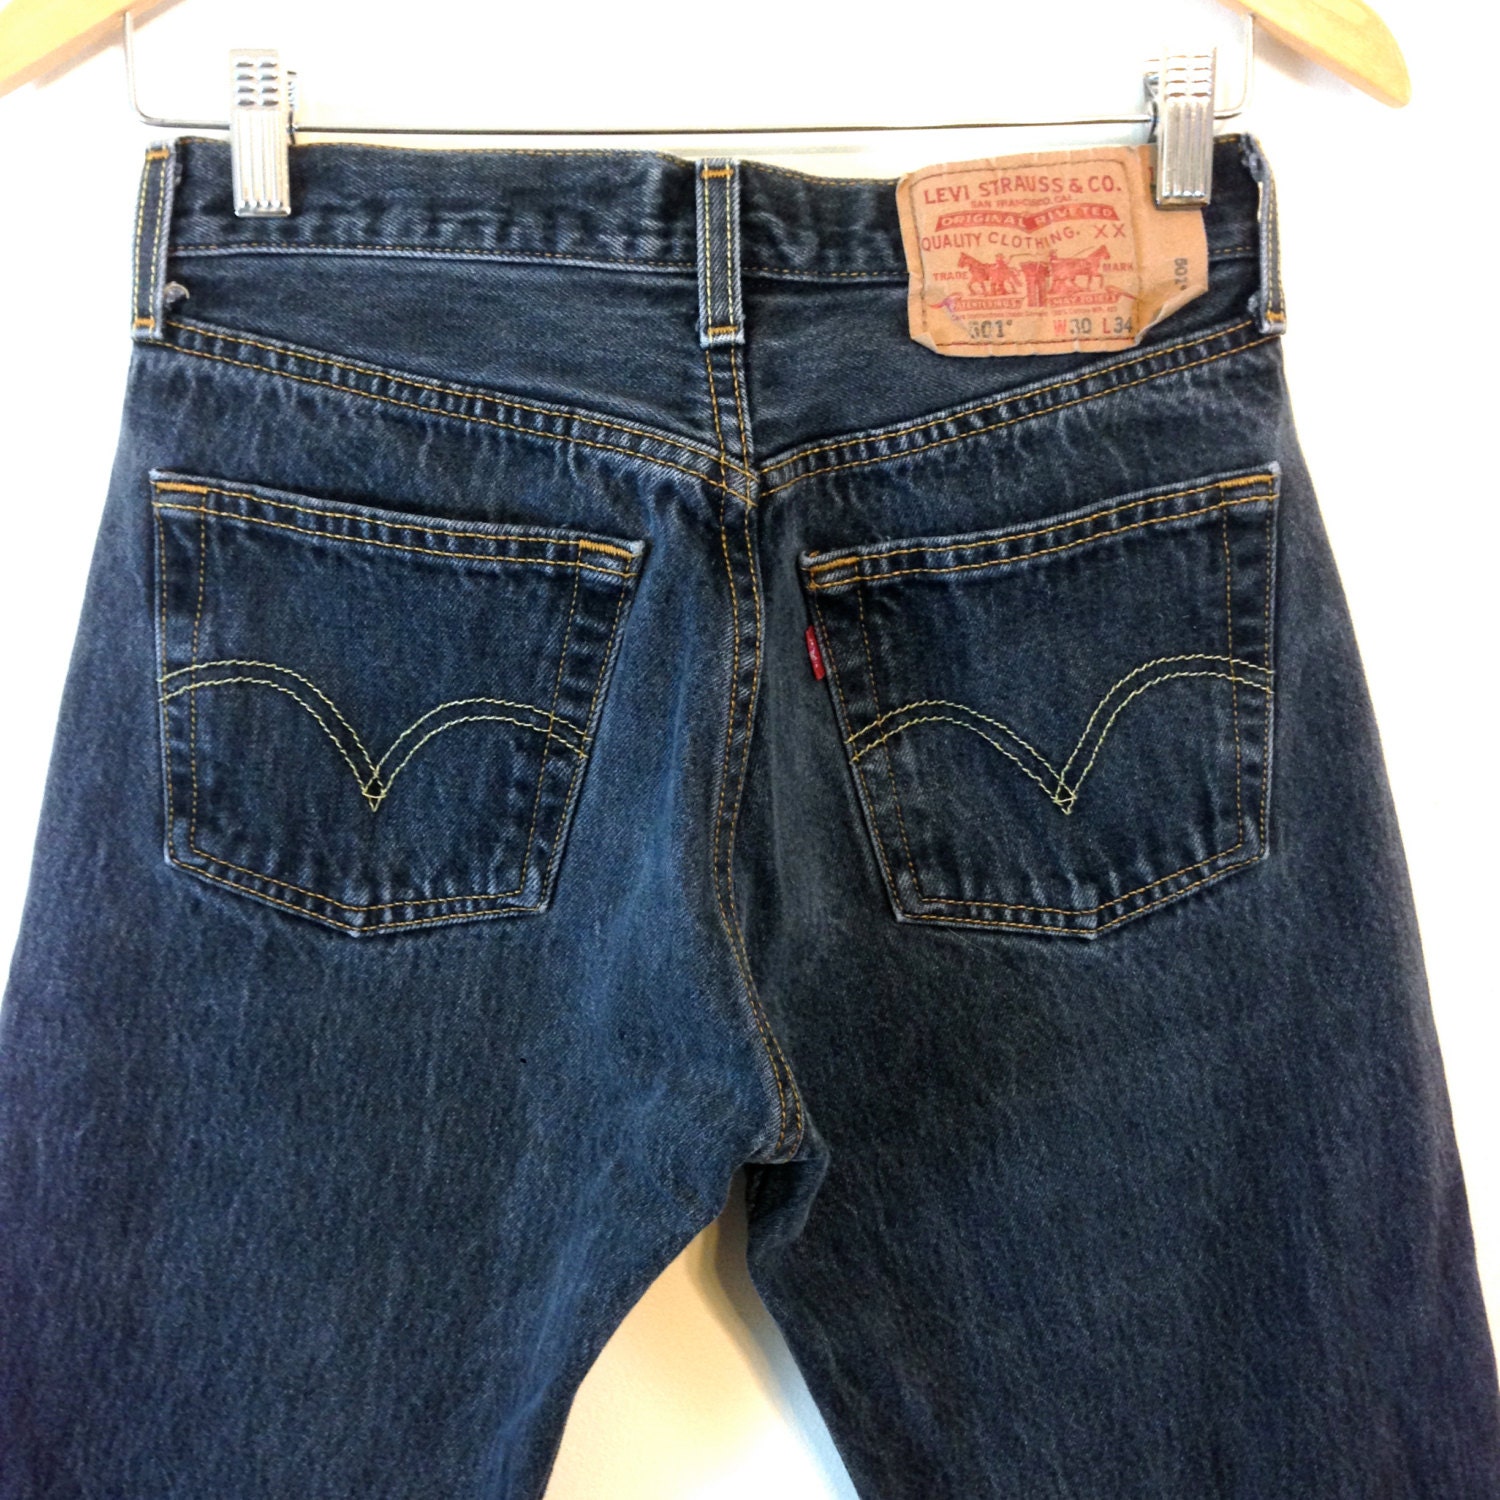 Vintage LEVIS 501s, Black 501 Jeans, Button Fly Levis, Mid Rise Levis ...